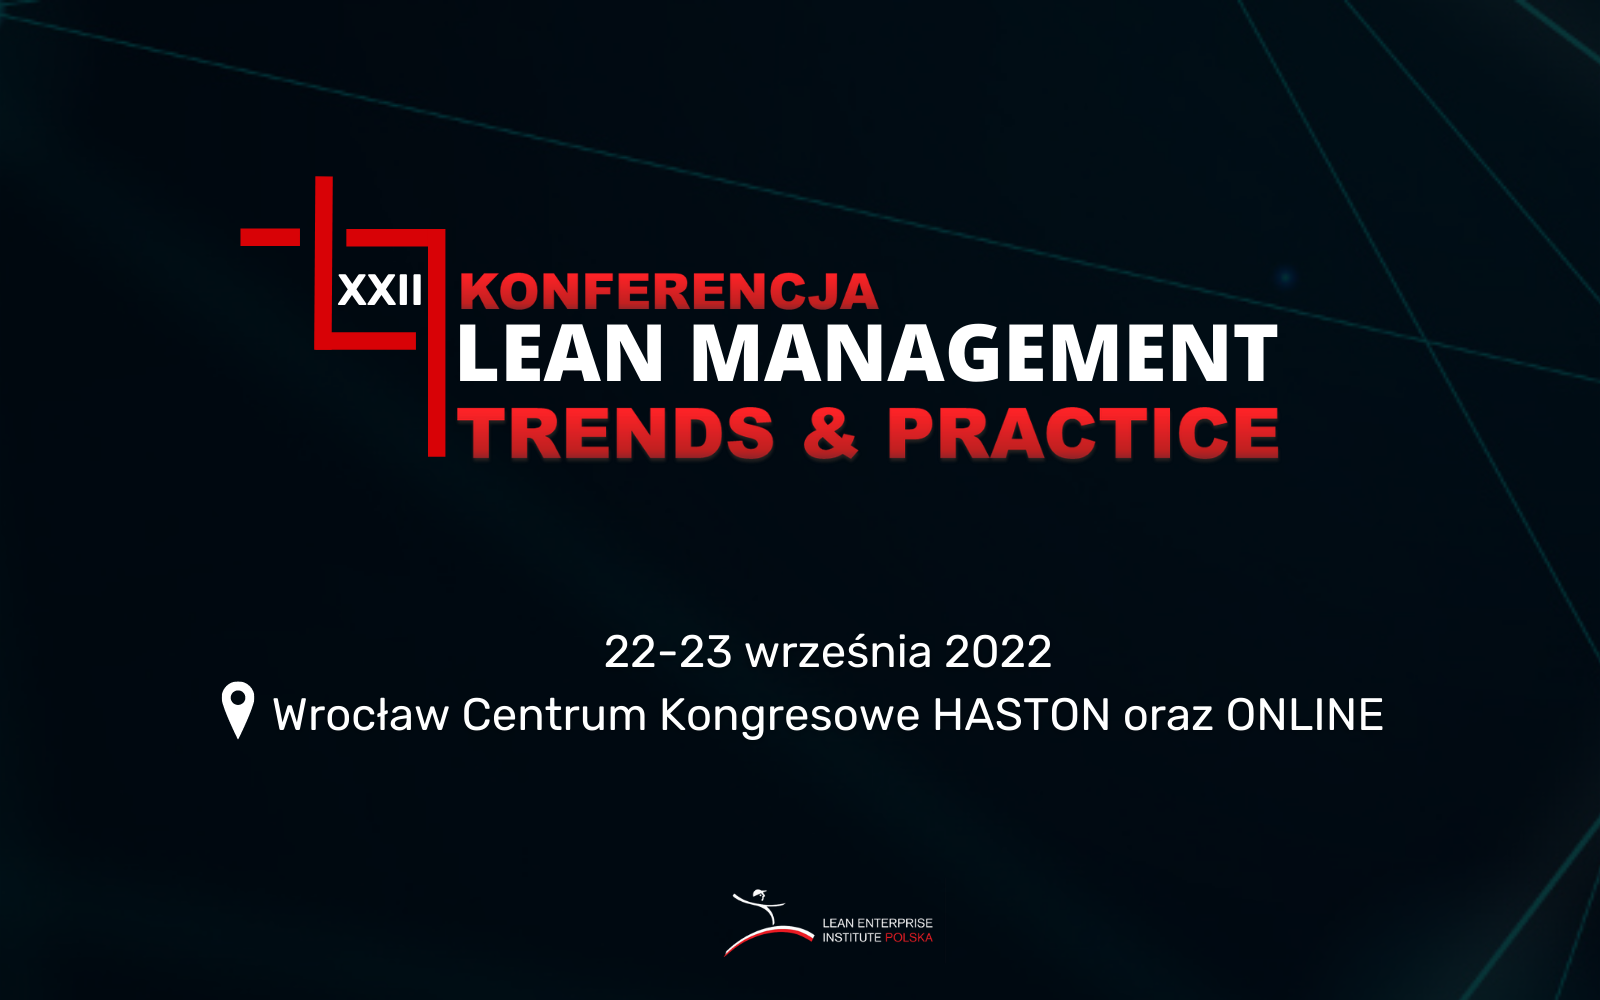 XXII Konferencja Lean Managament Trends & Practice już 22-23 września